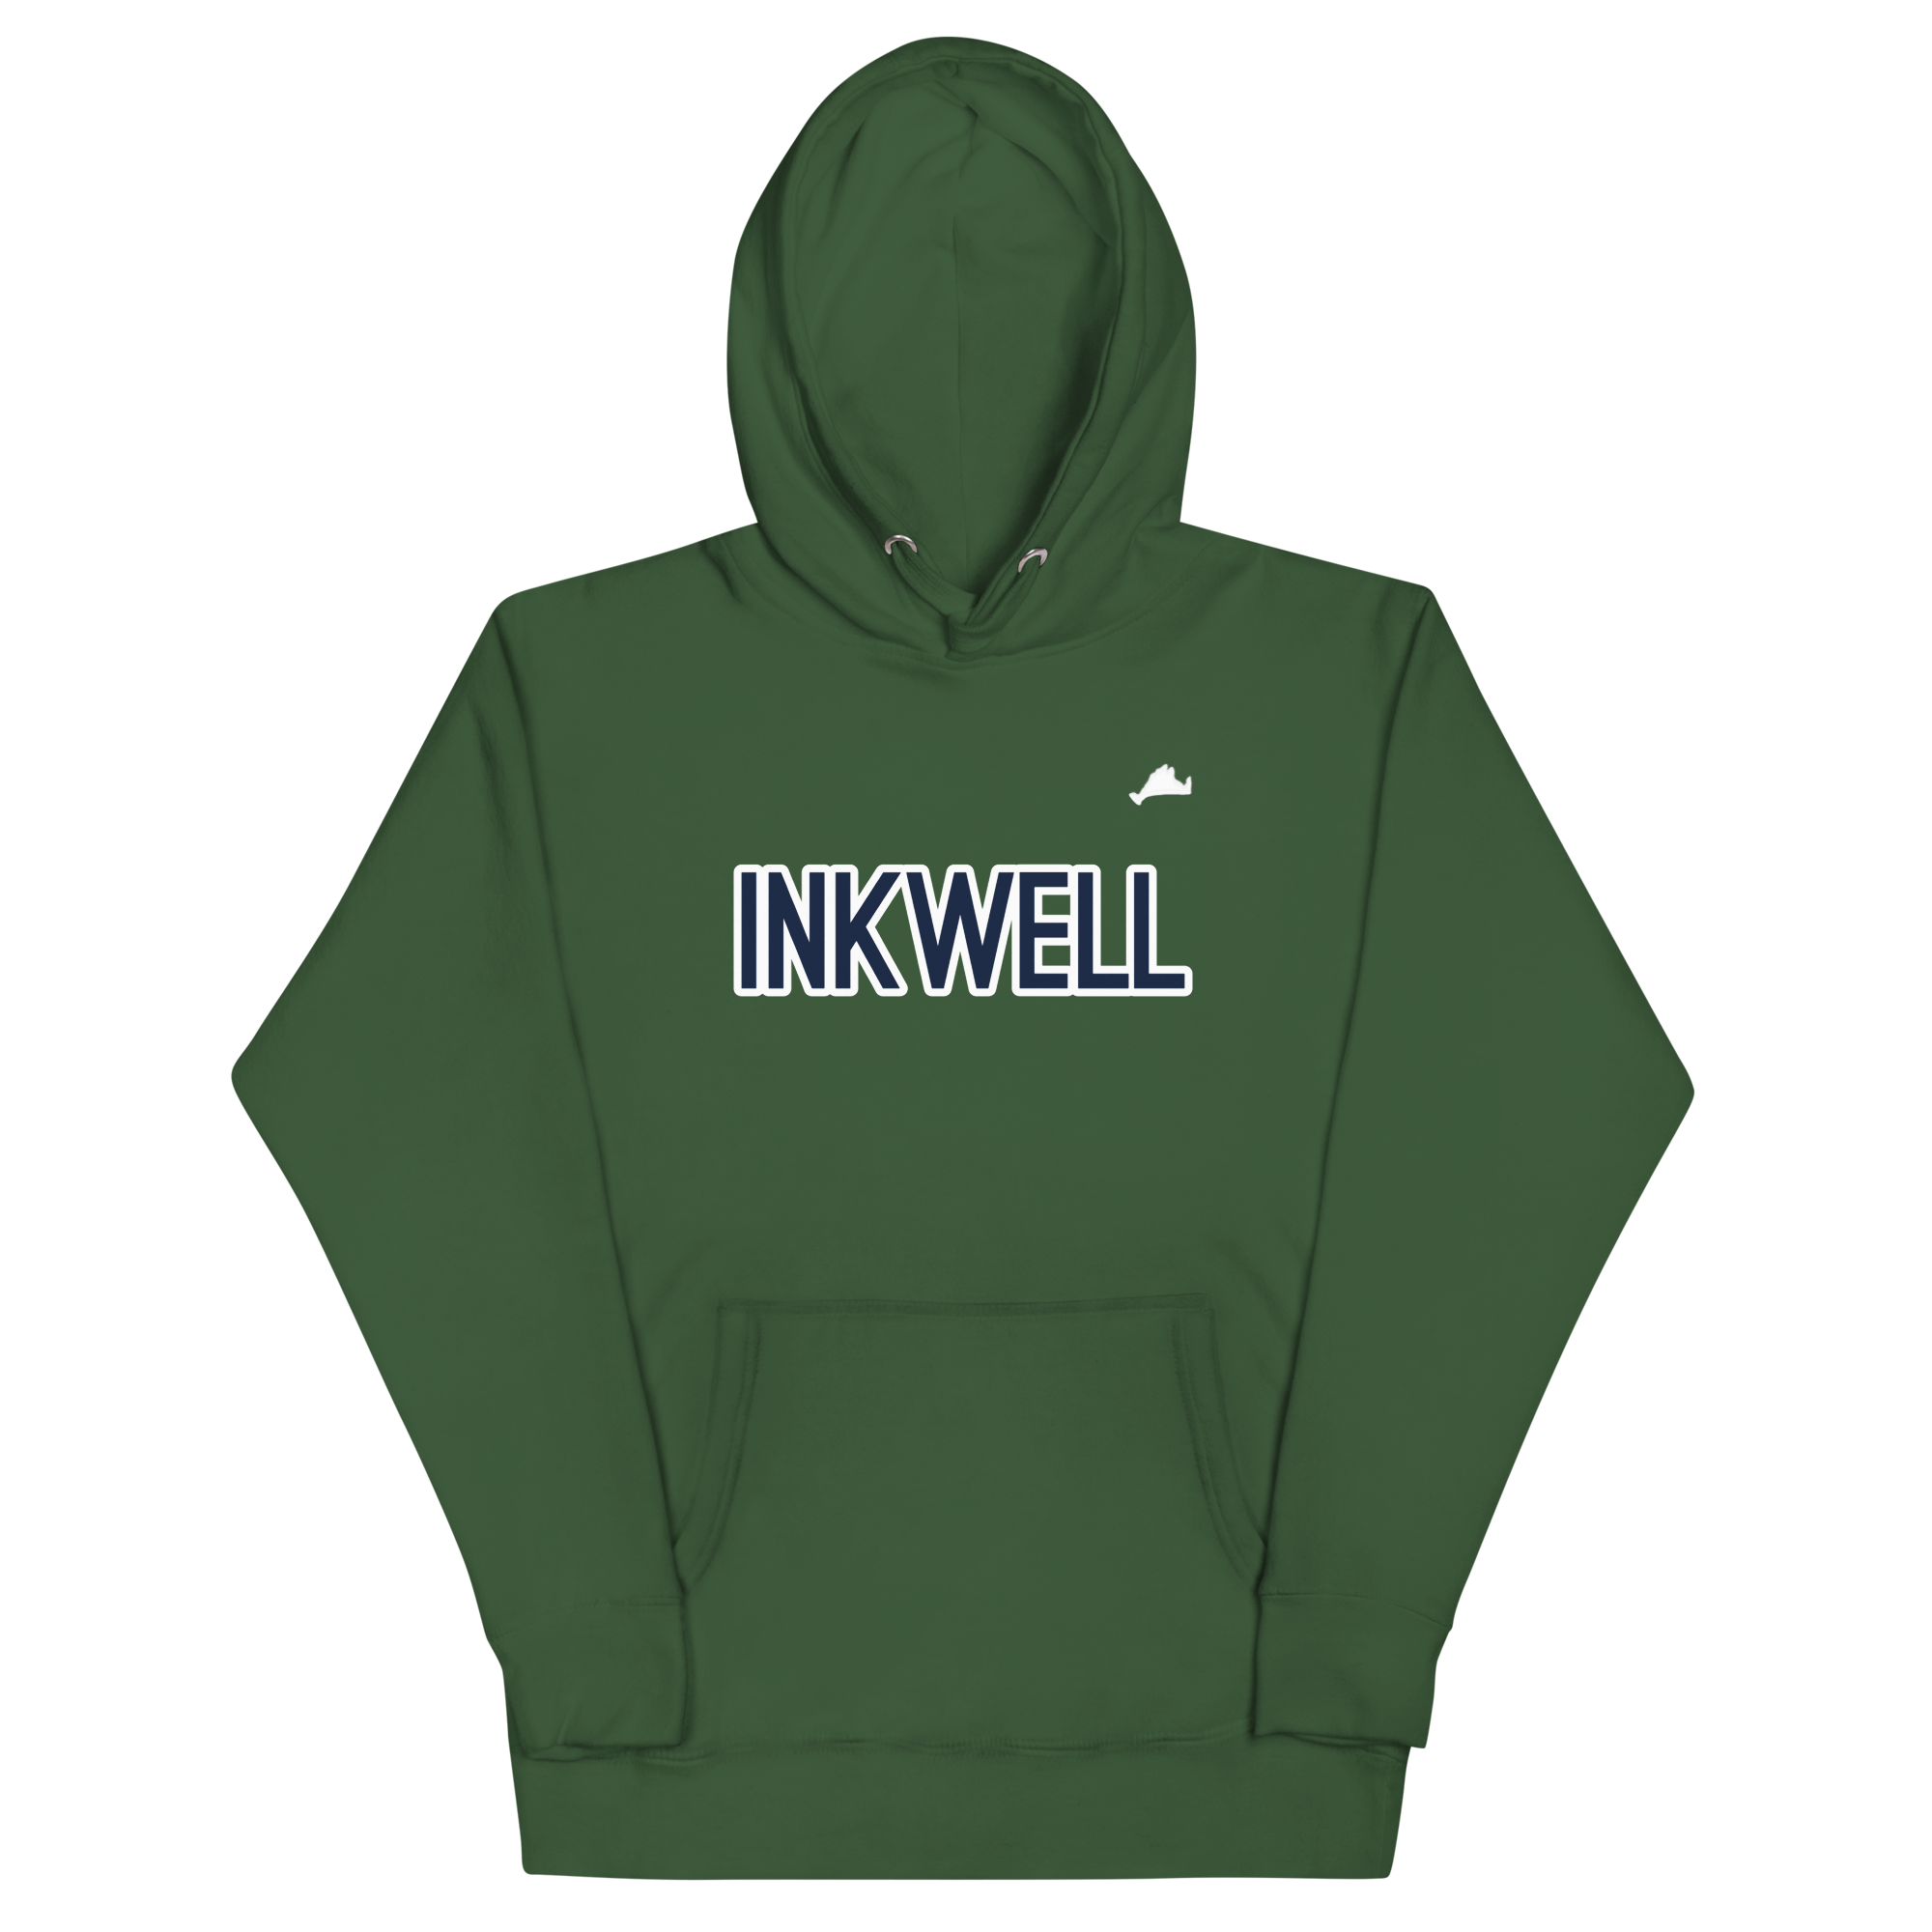 Inkwell Navy & White Unisex Hoodie